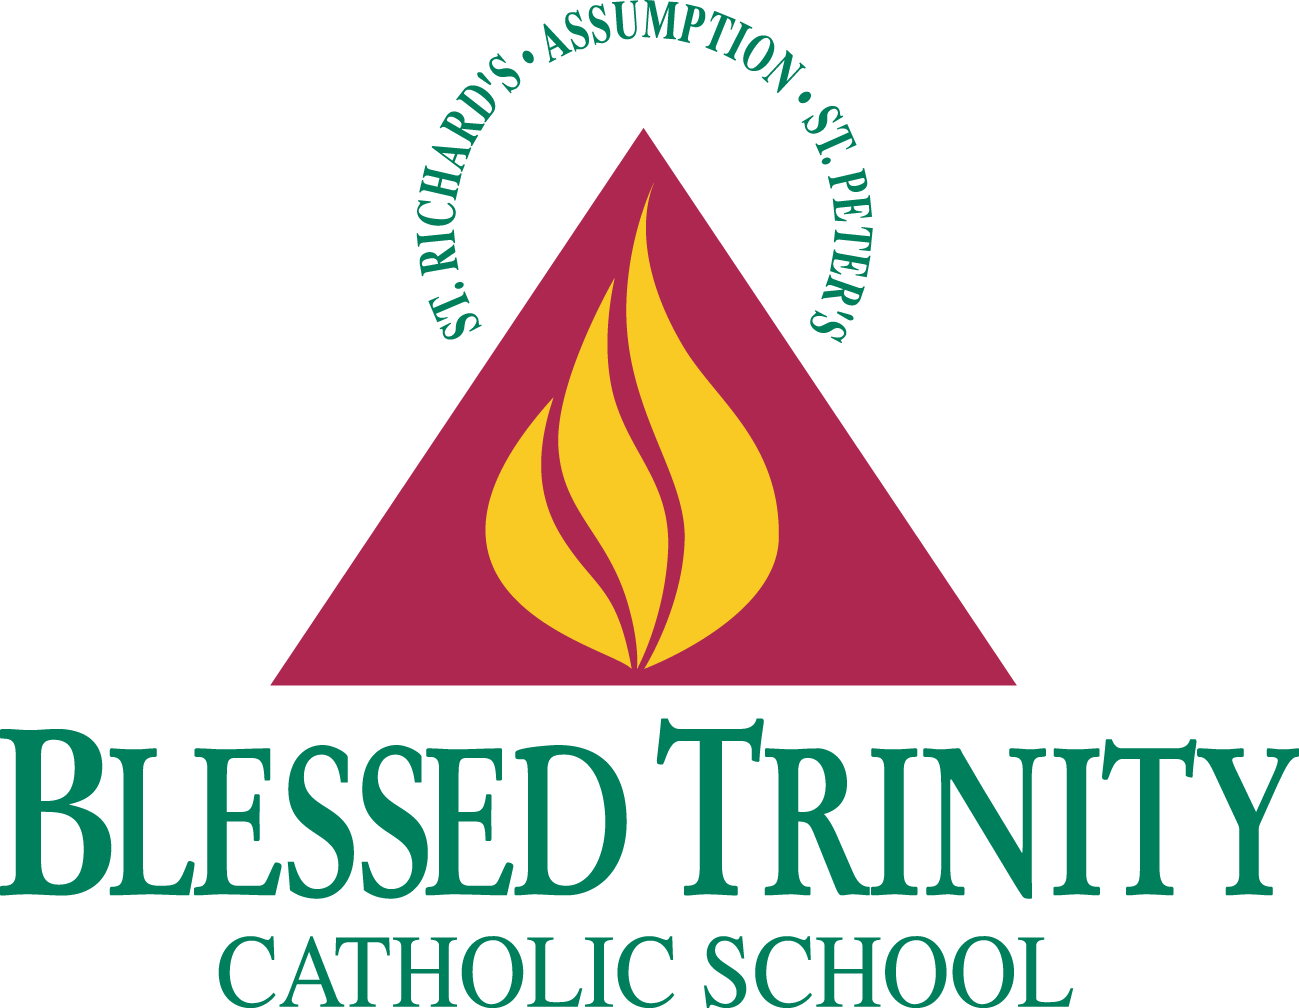 A Logo Of A Catholic School